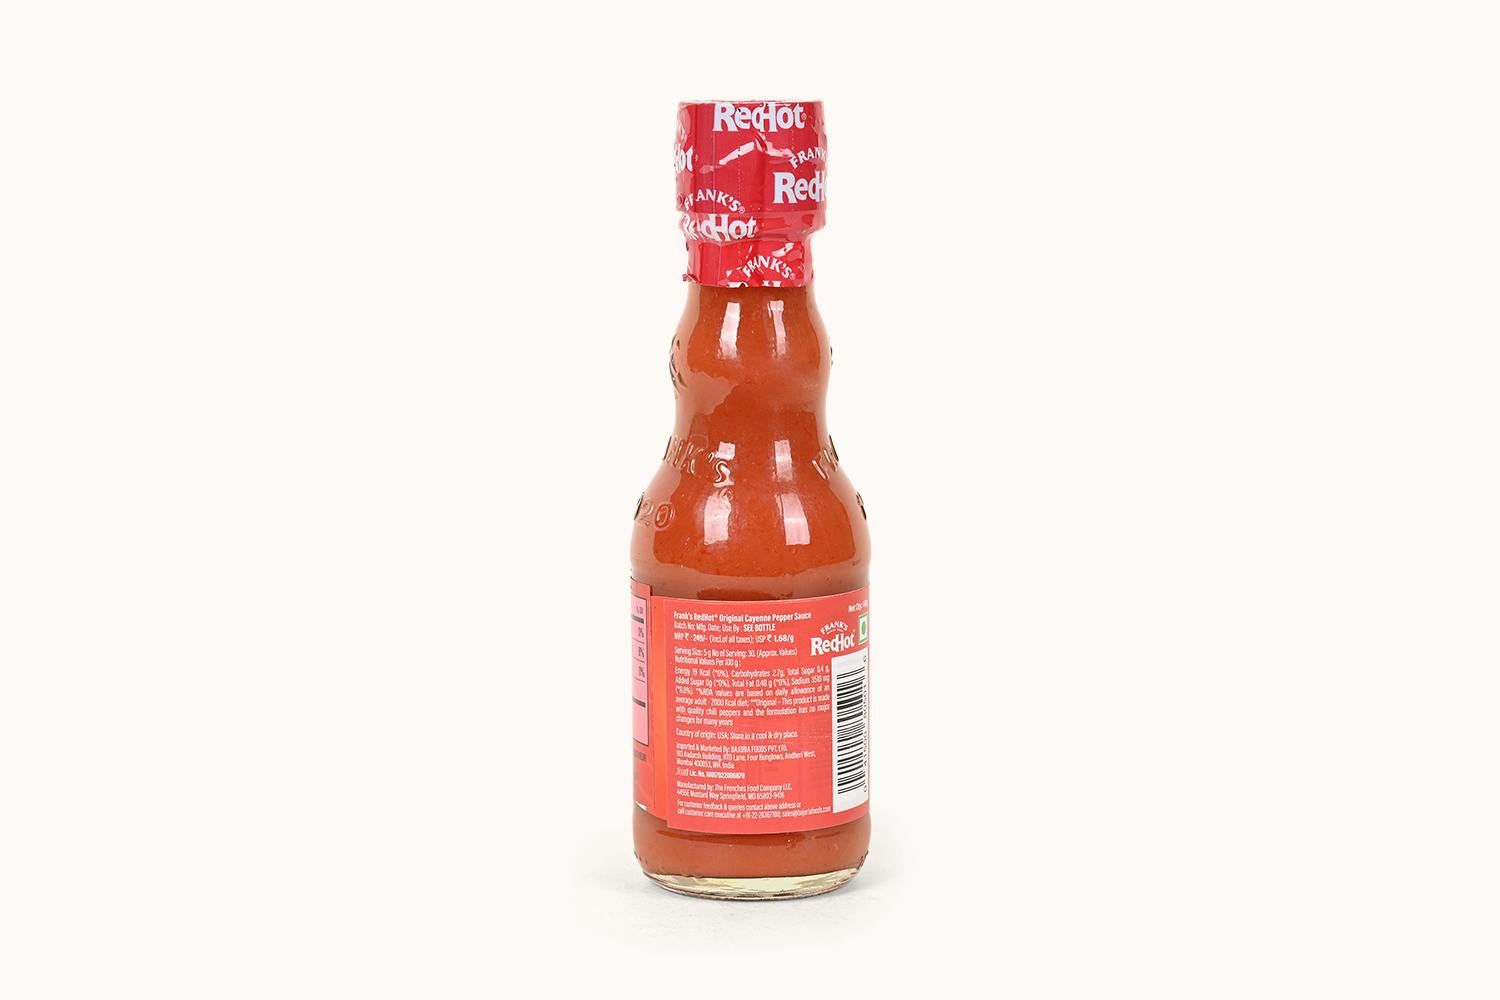 /f/r/franks-red-hot-original-sauce-148ml-3_aogybpn7ijondvg0.jpg